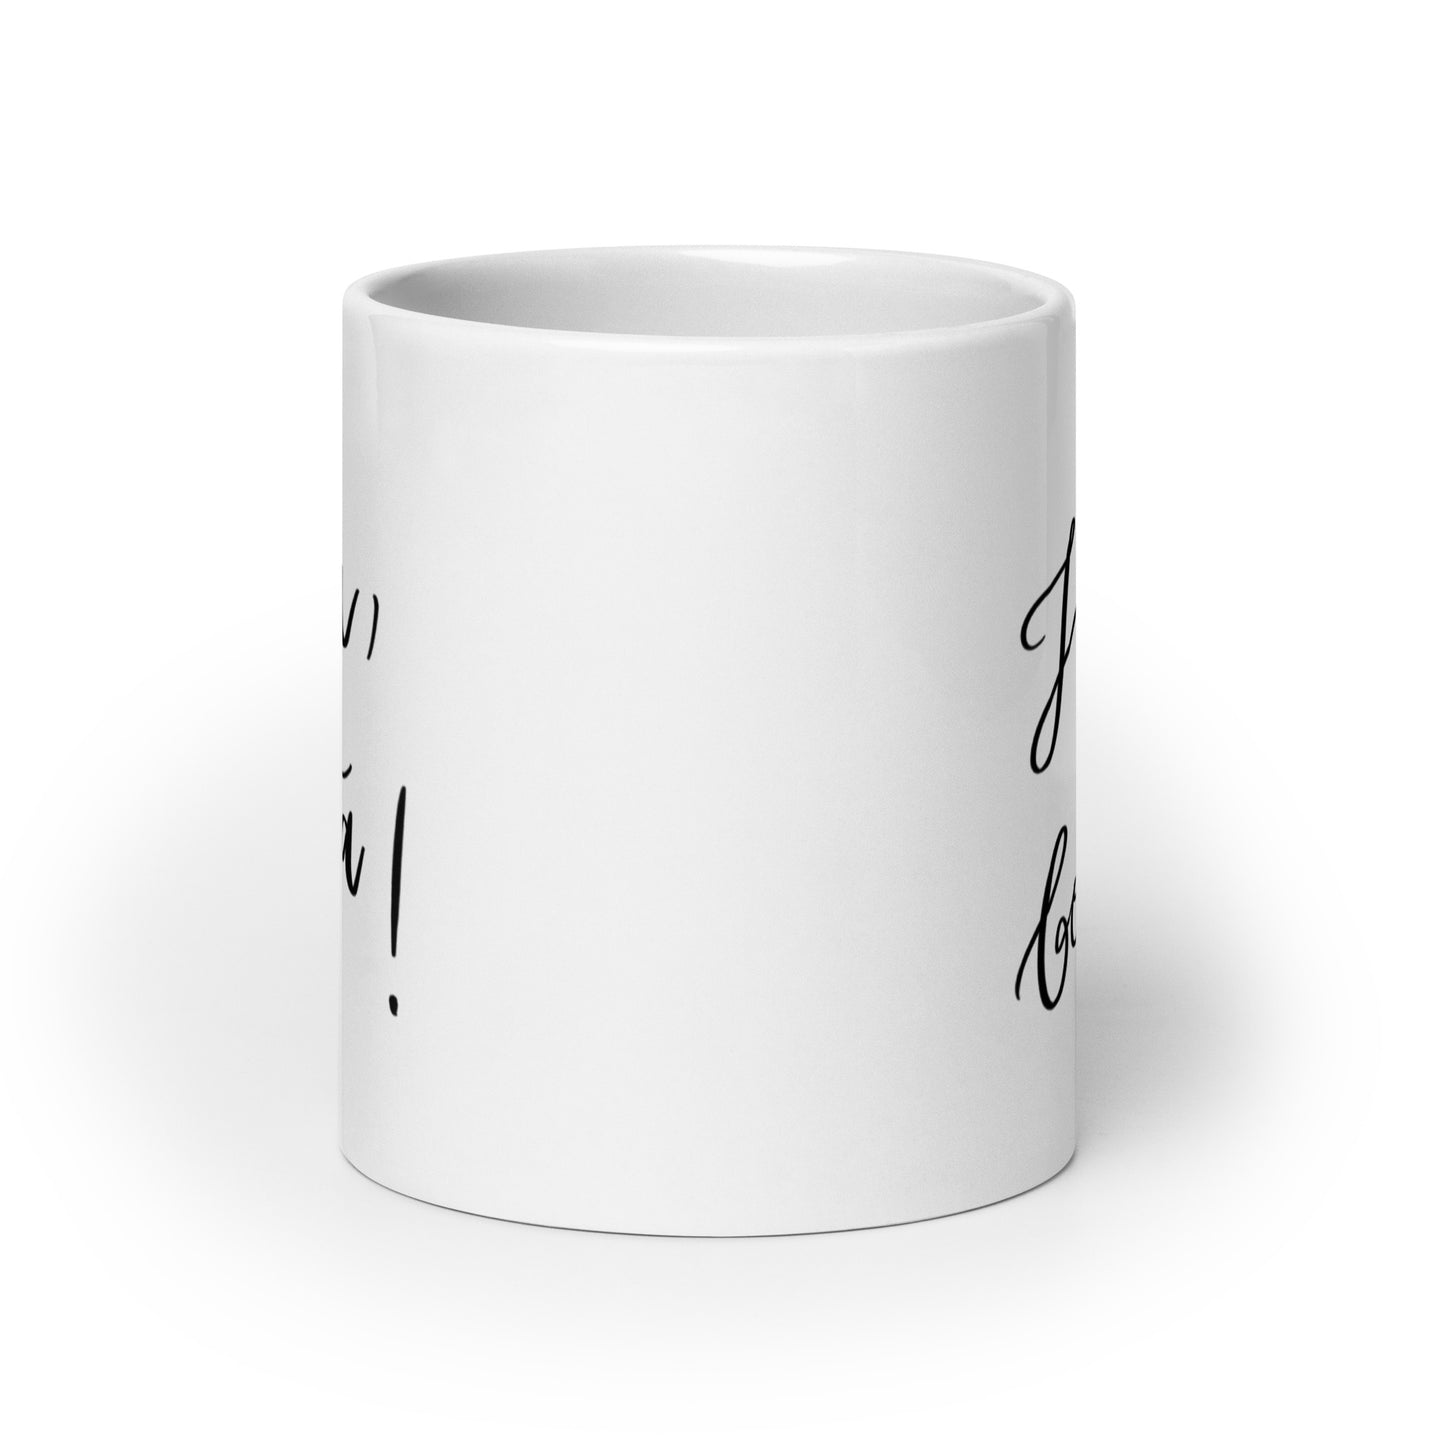 Ceramic mug "Hola, bonita!"